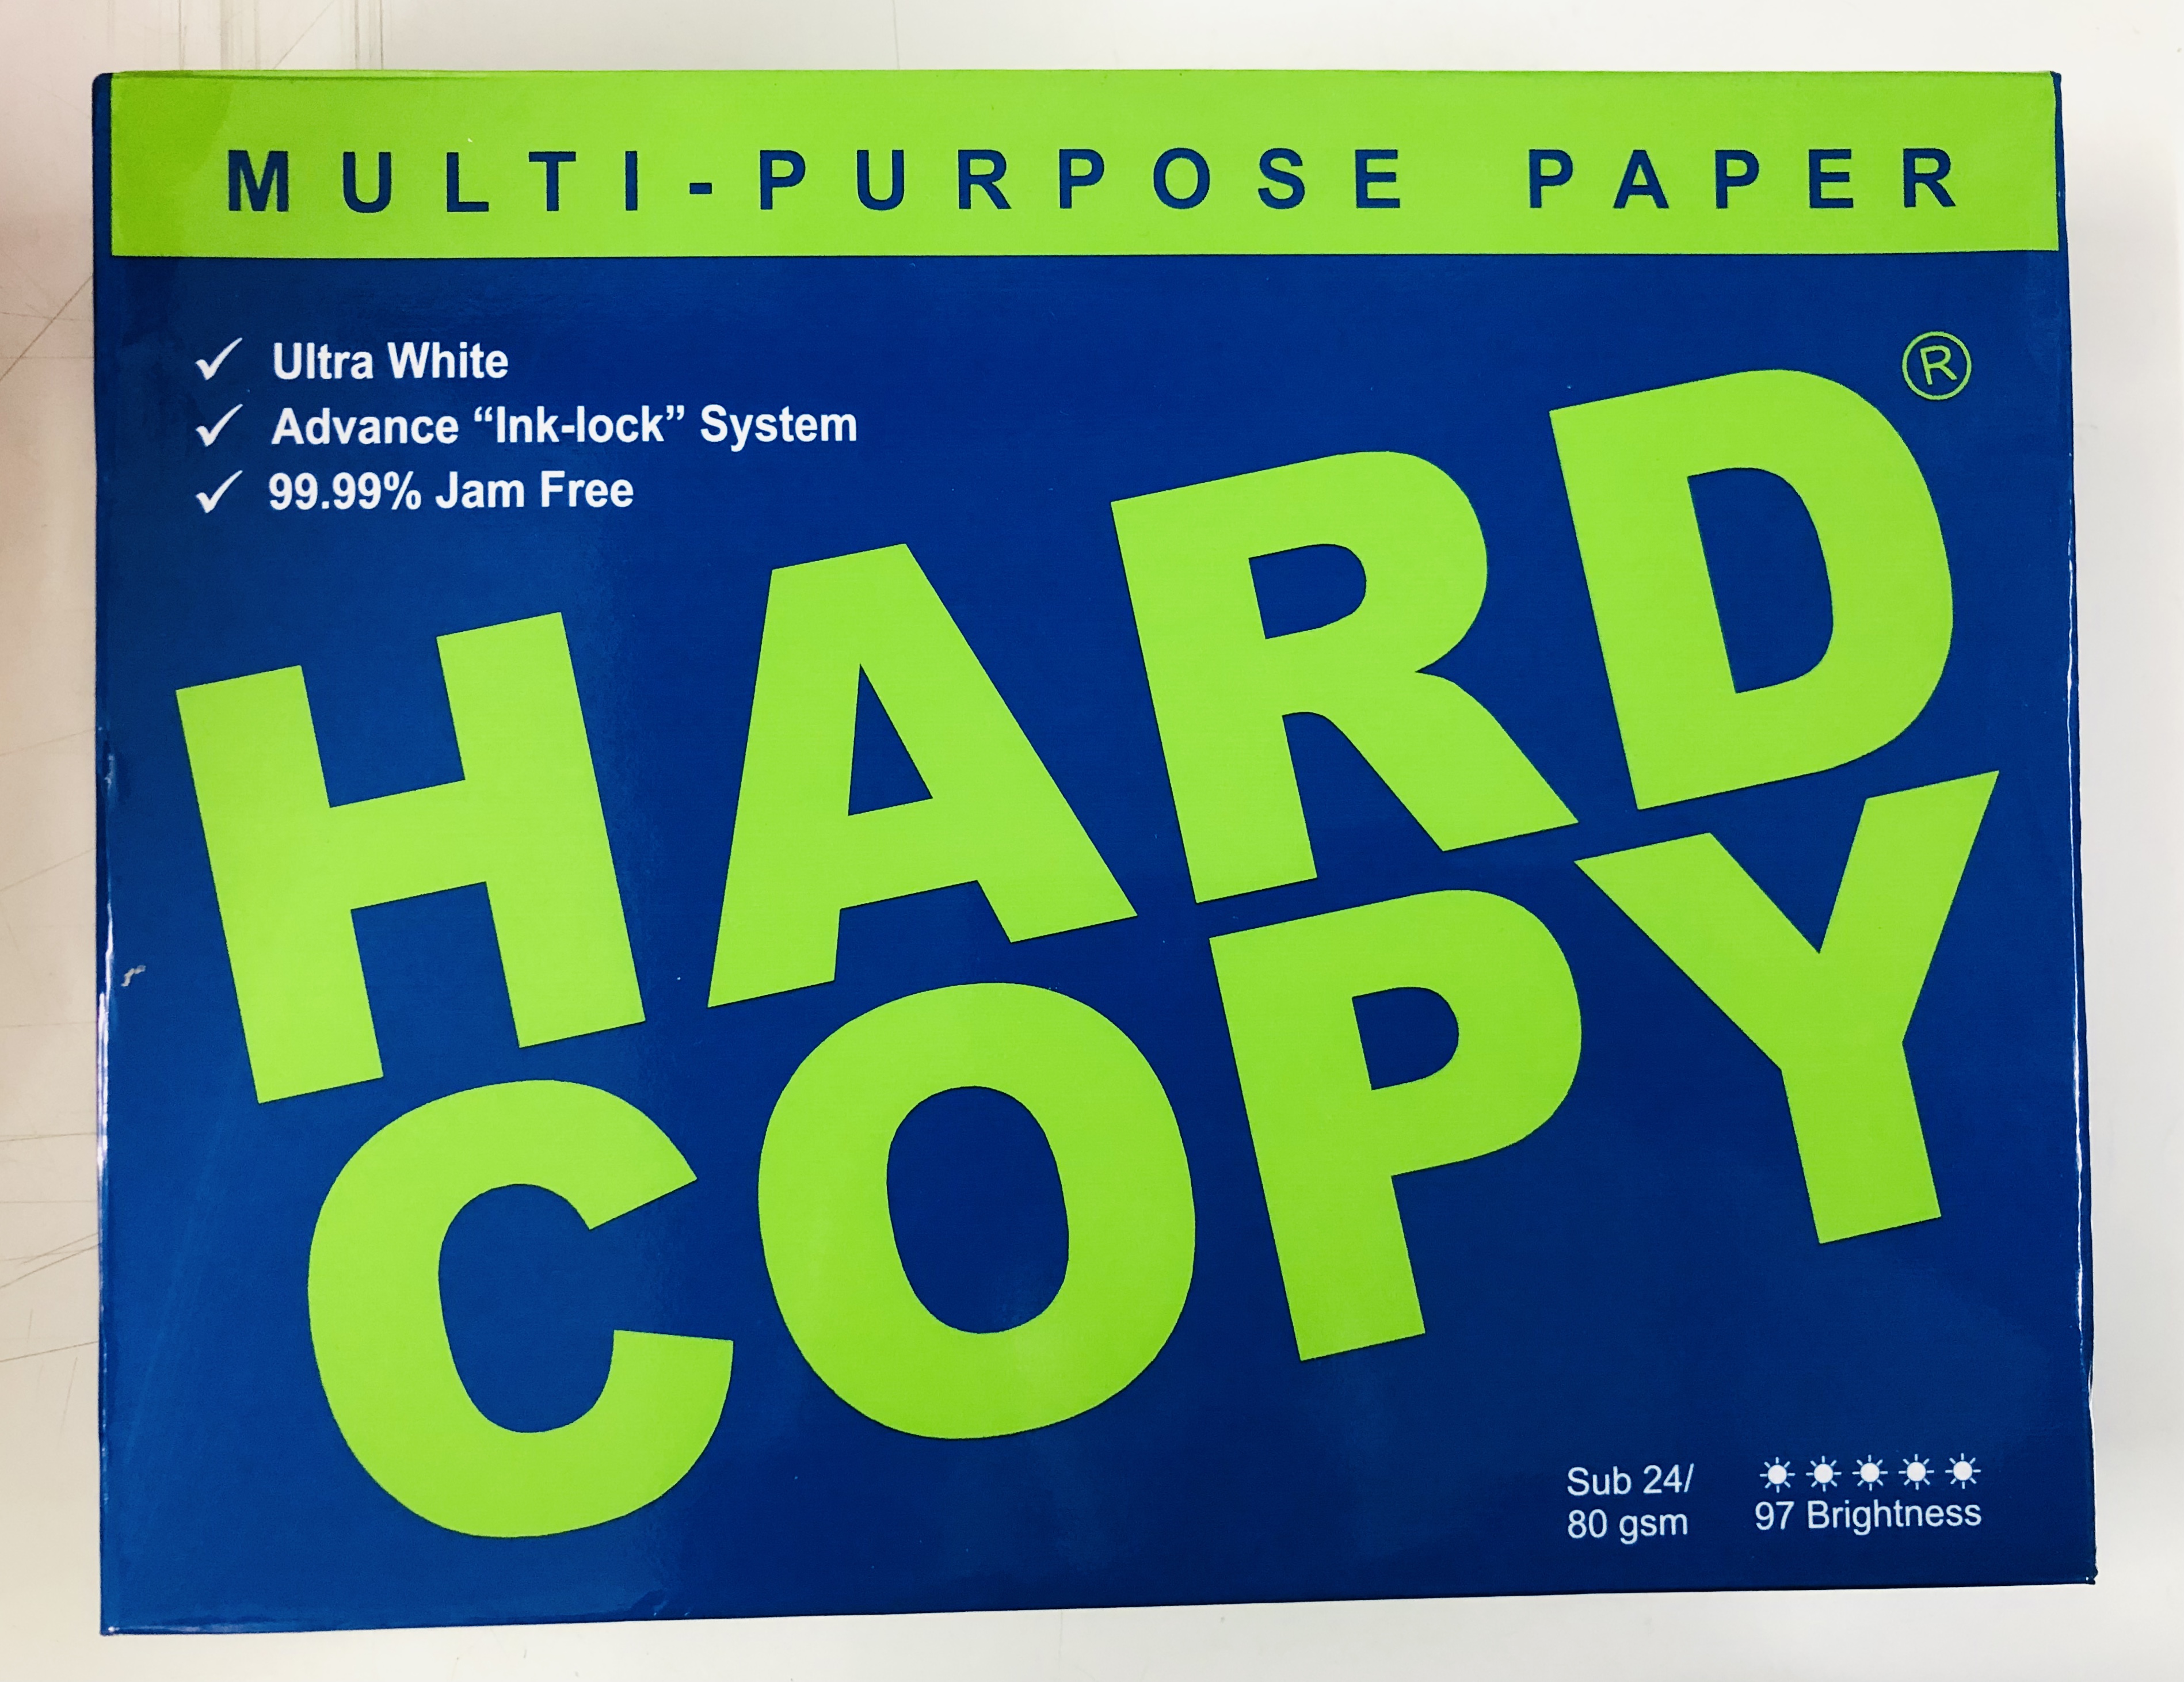 Mfhptn Hard Copy Bond Paper Short 85x11 80gsm Blue 500sheets Per Ream Substance 24 Authentic 1055